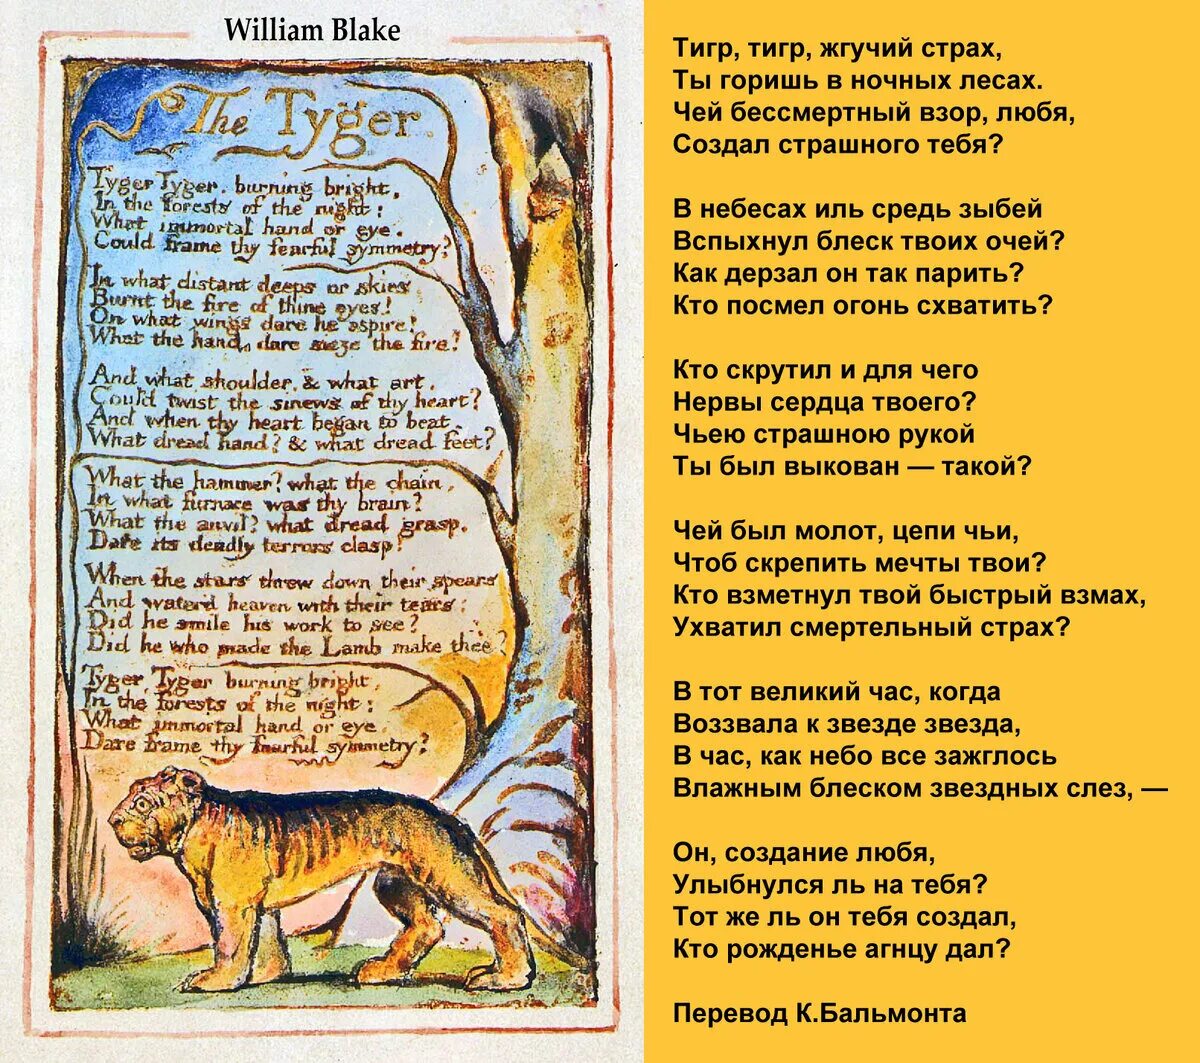 Стихотворение Уильяма Блейка тигр тигр. Уильям Блейк тигр стих. Уильям Блейк стихи тигр тигр жгучий страх. Уильям Блейк стихи. Тигр притча